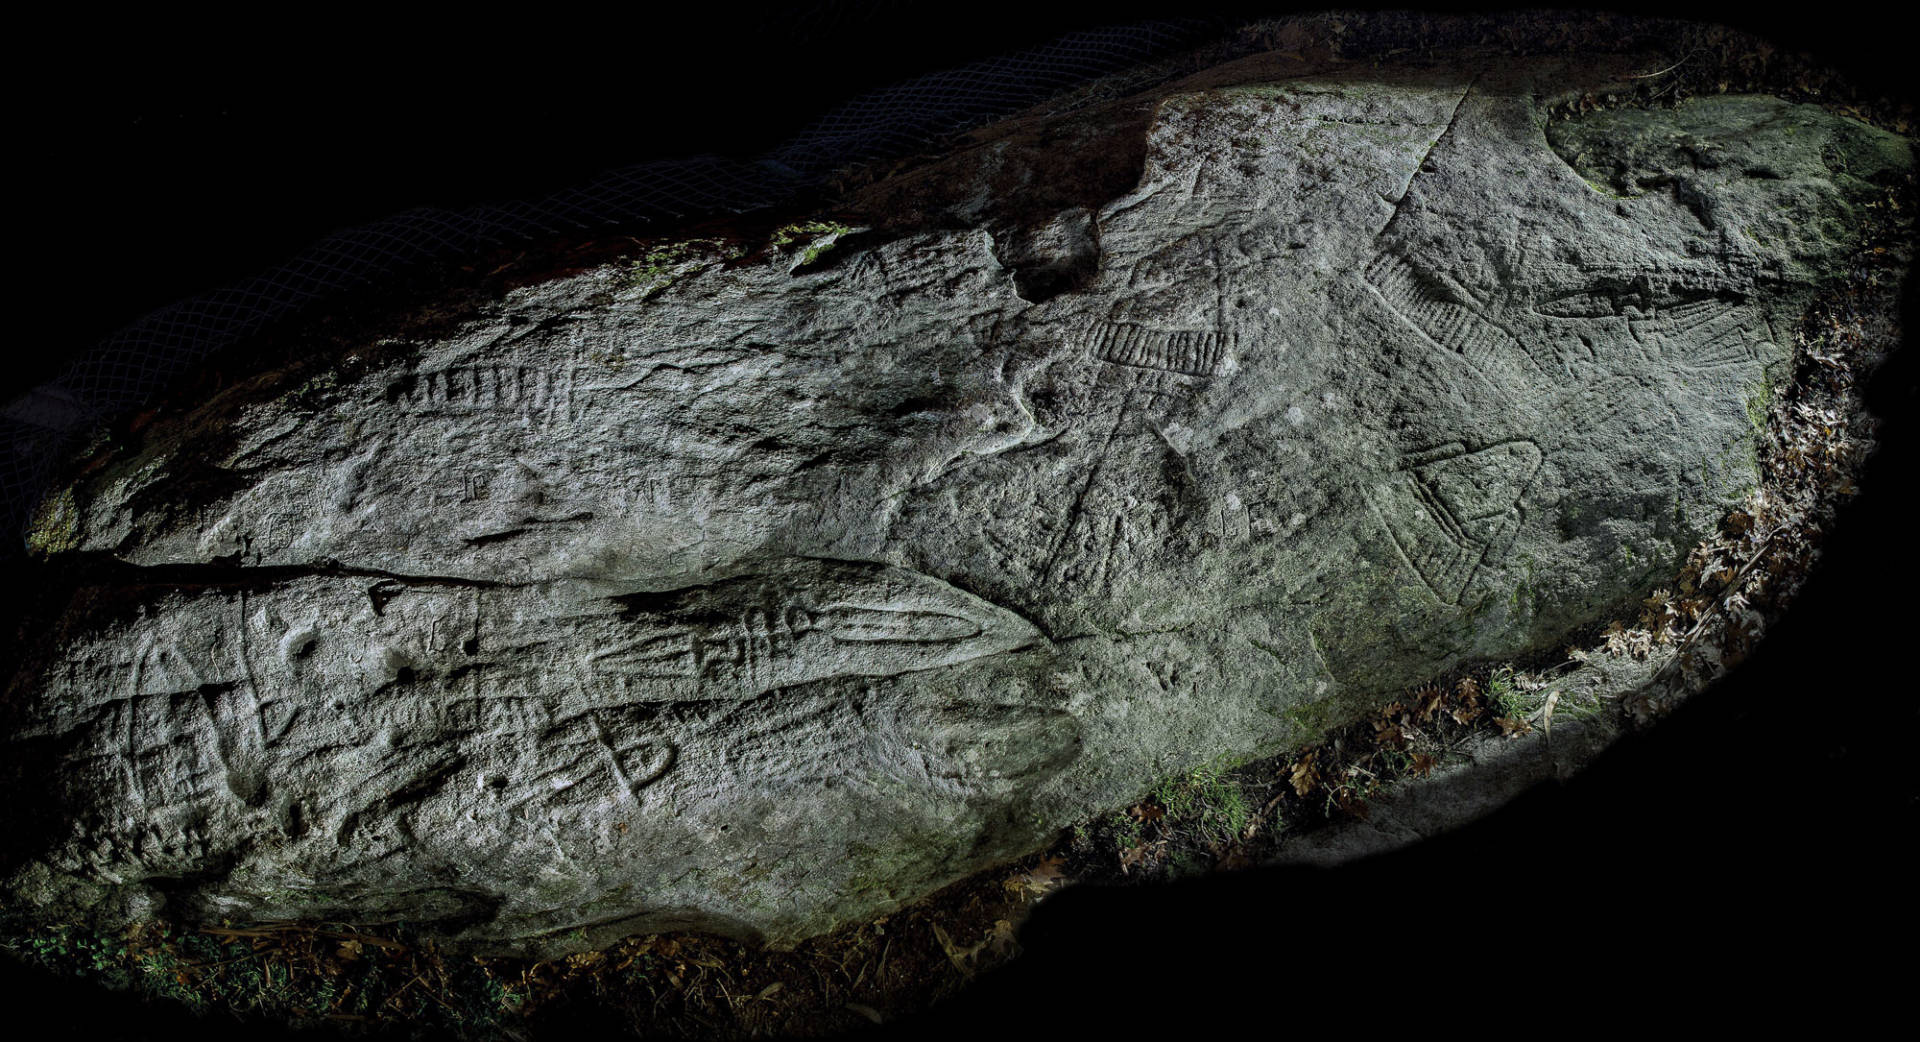 Vista general nocturna del Petroglifo de Conxo. ©Colectivo a Rula.